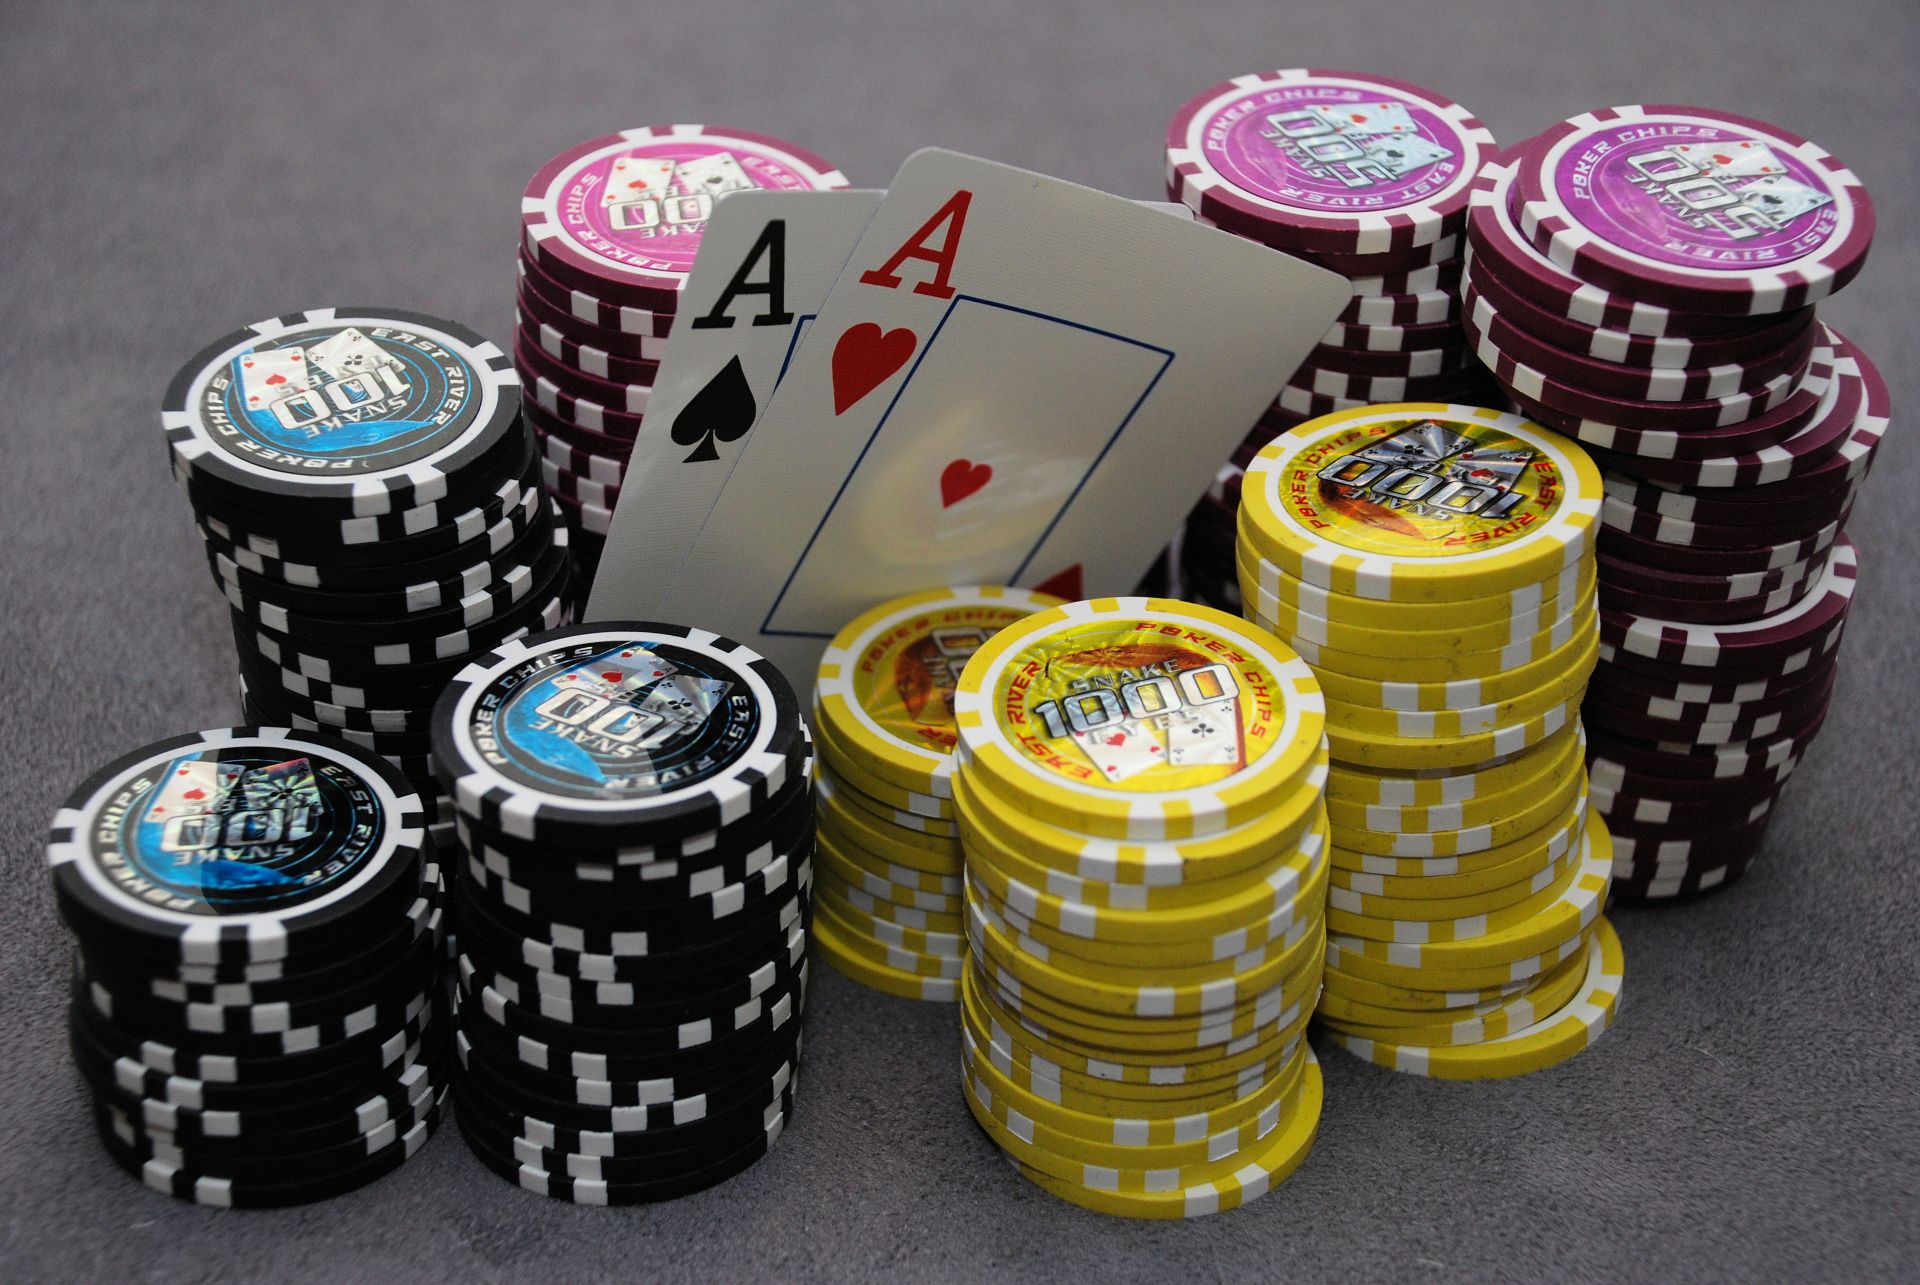 игры из соц. сетей казино покер азартные игры удачи шанс риск блэкджек туз чип играть выиграть повезло отдых кости картежник рулетка игры врезная победитель